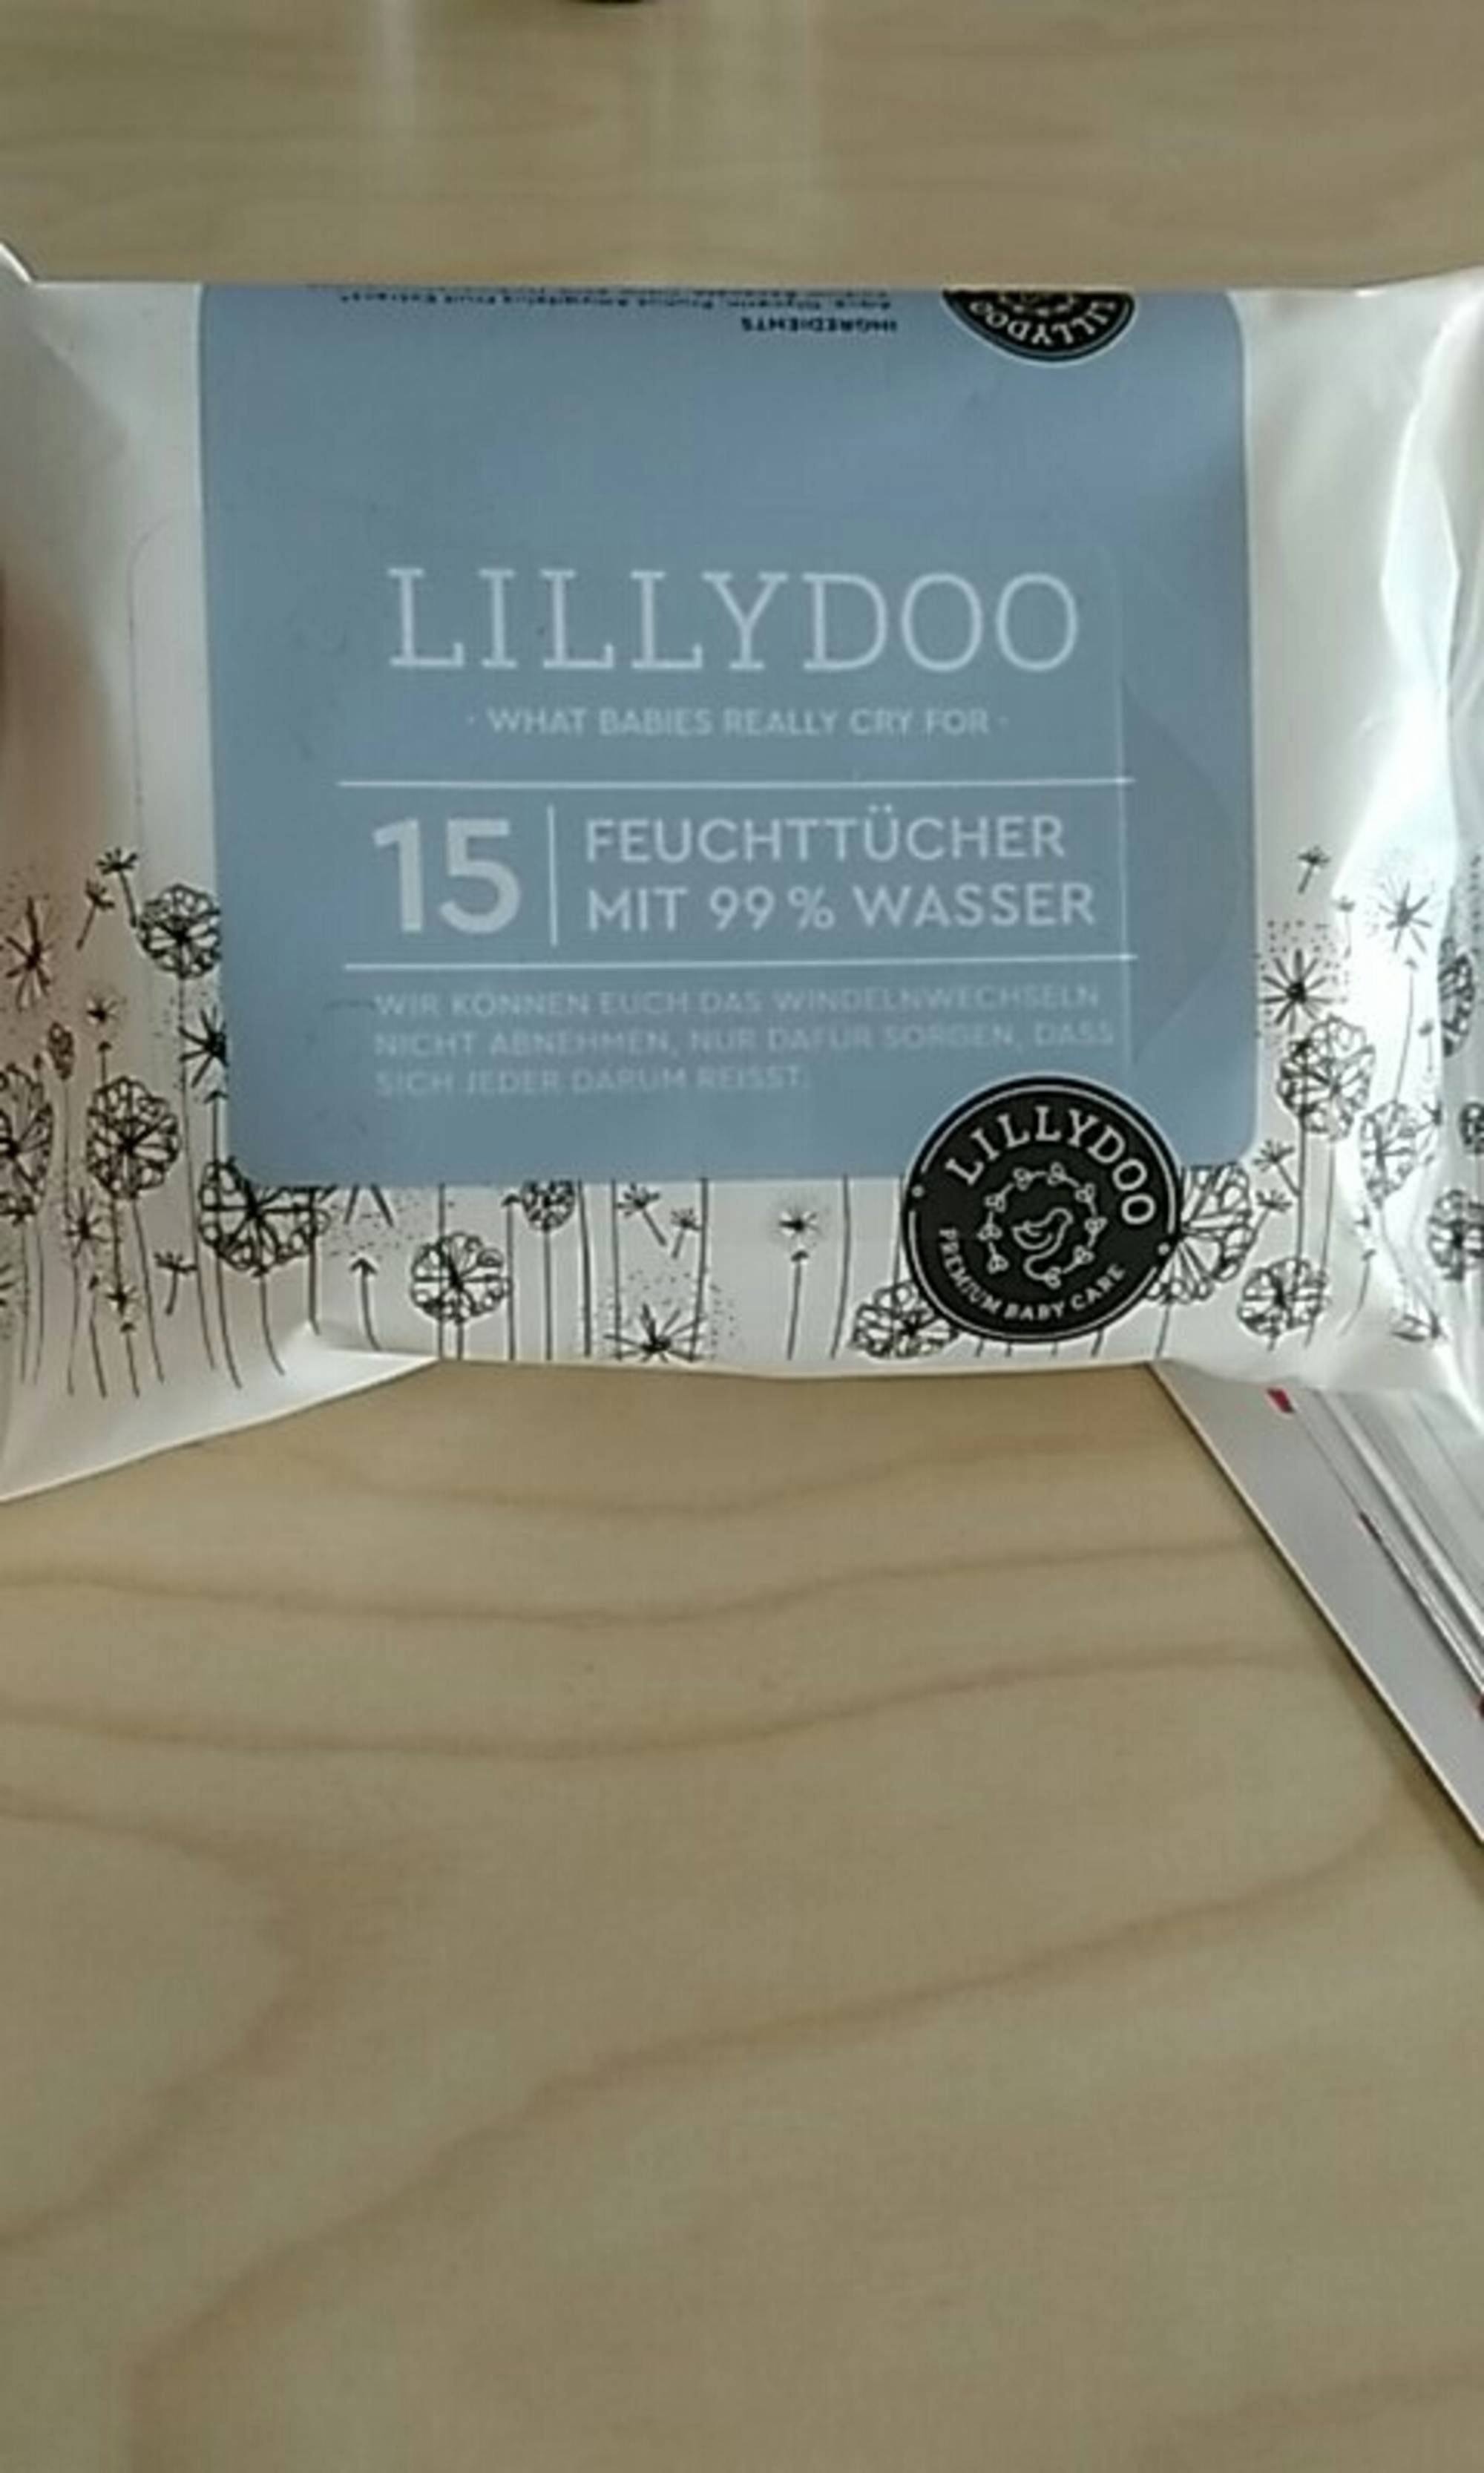 LILLYDOO - 15 feuchttücher mit 99% wasser